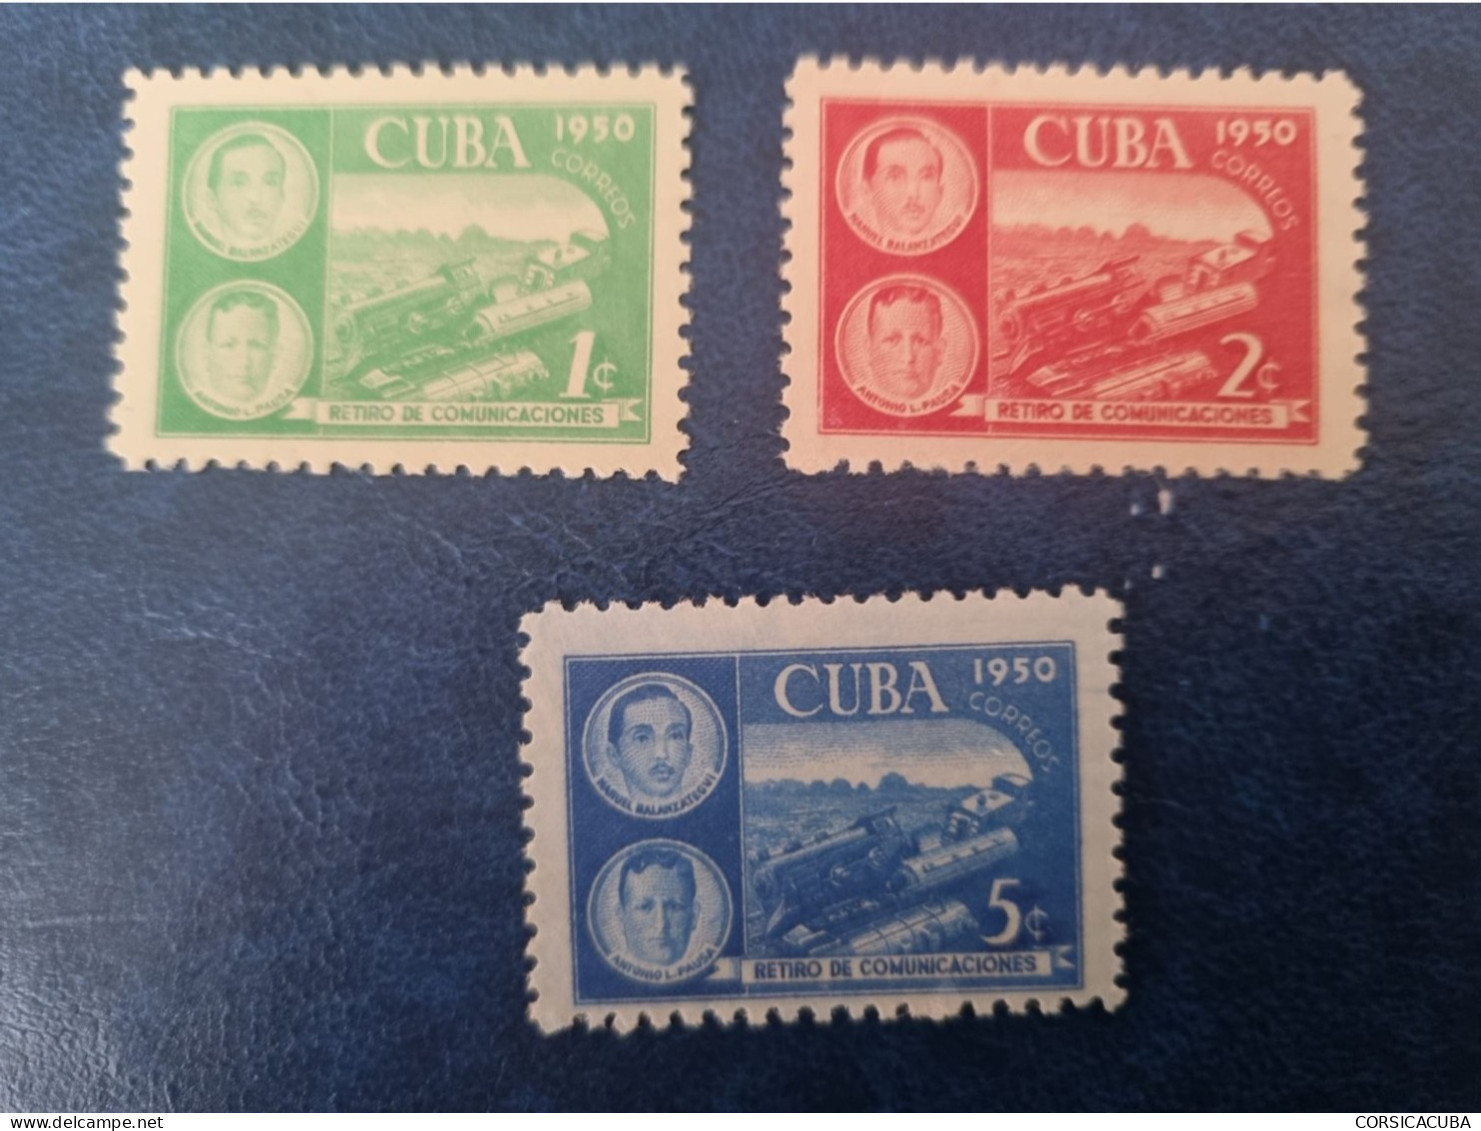 CUBA  NEUF  1950    RETIRO  DE  COMUNICACIONES  //  PARFAIT  ETAT  //  1er  CHOIX  // - Ongebruikt